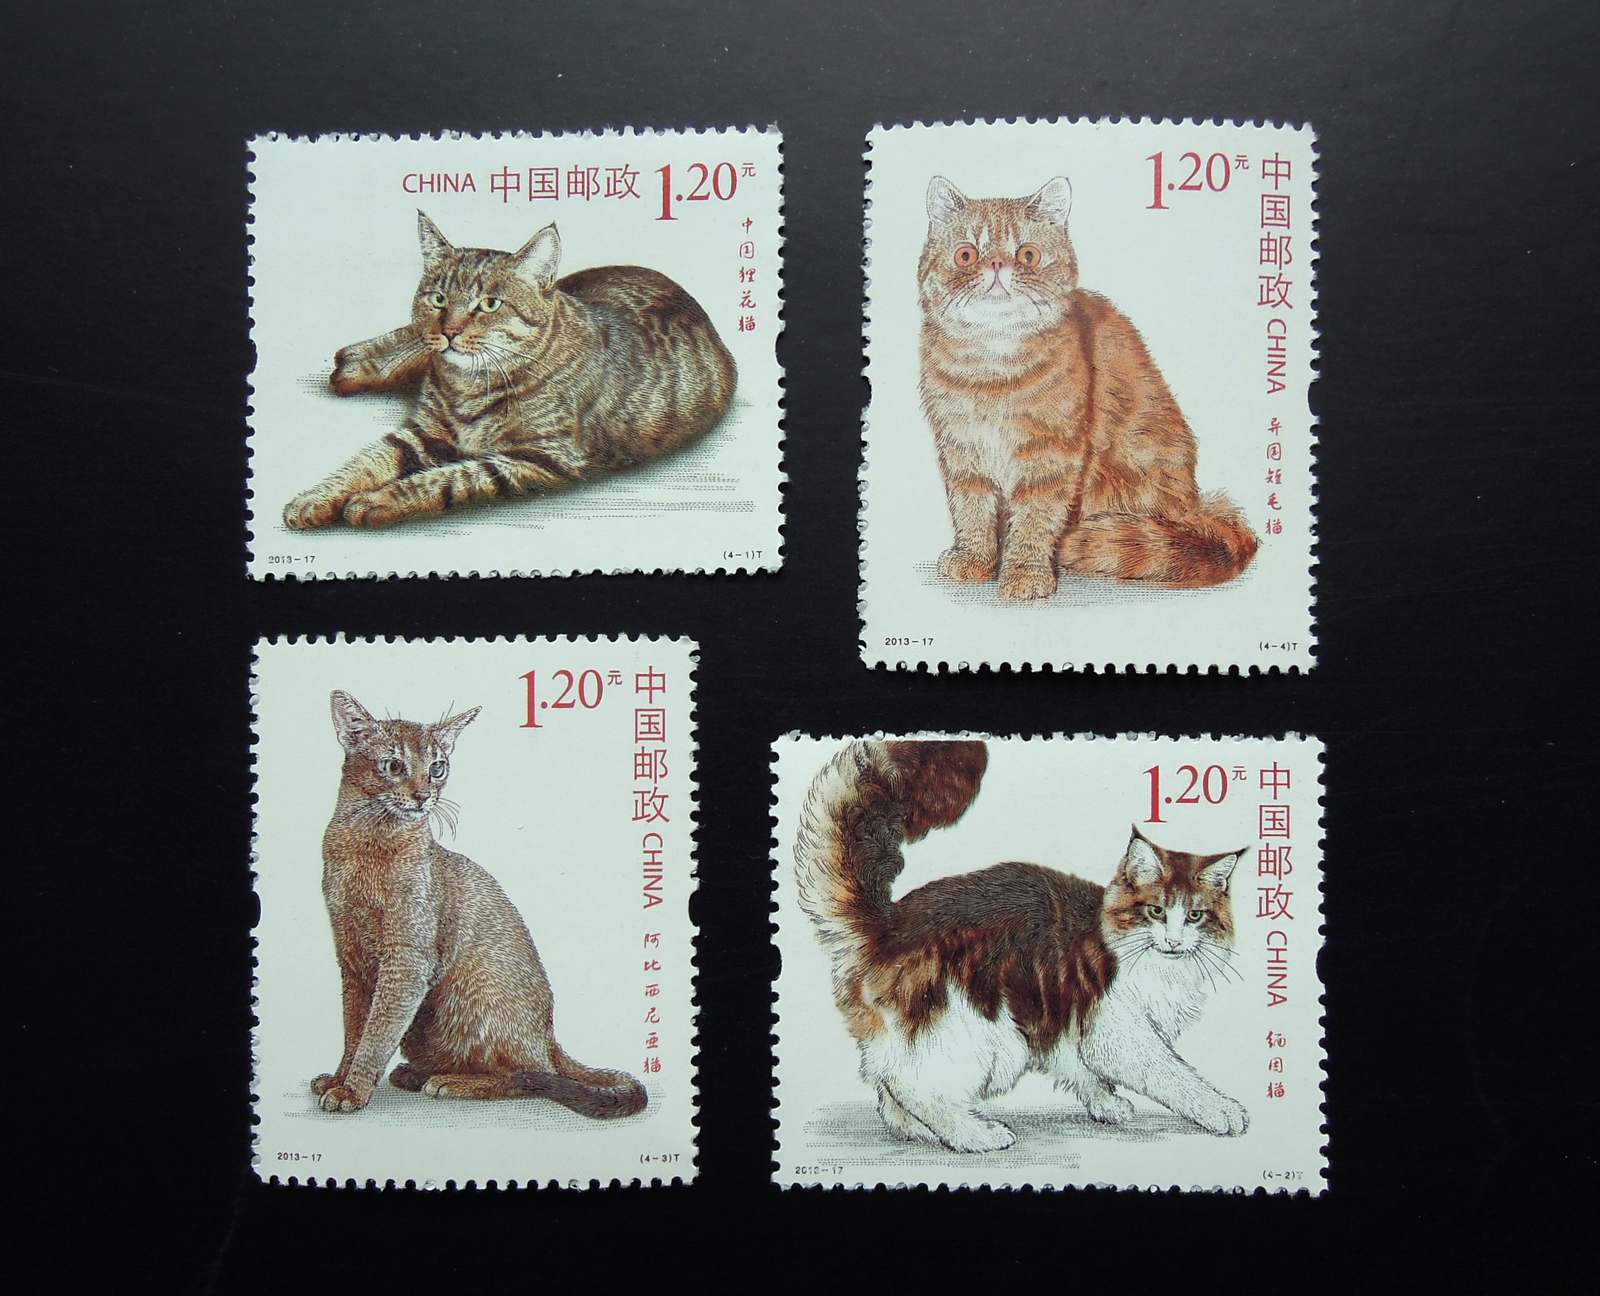 打折邮票 面值12元 猫 规格33*4cm 雕刻版 单枚08元 一套四